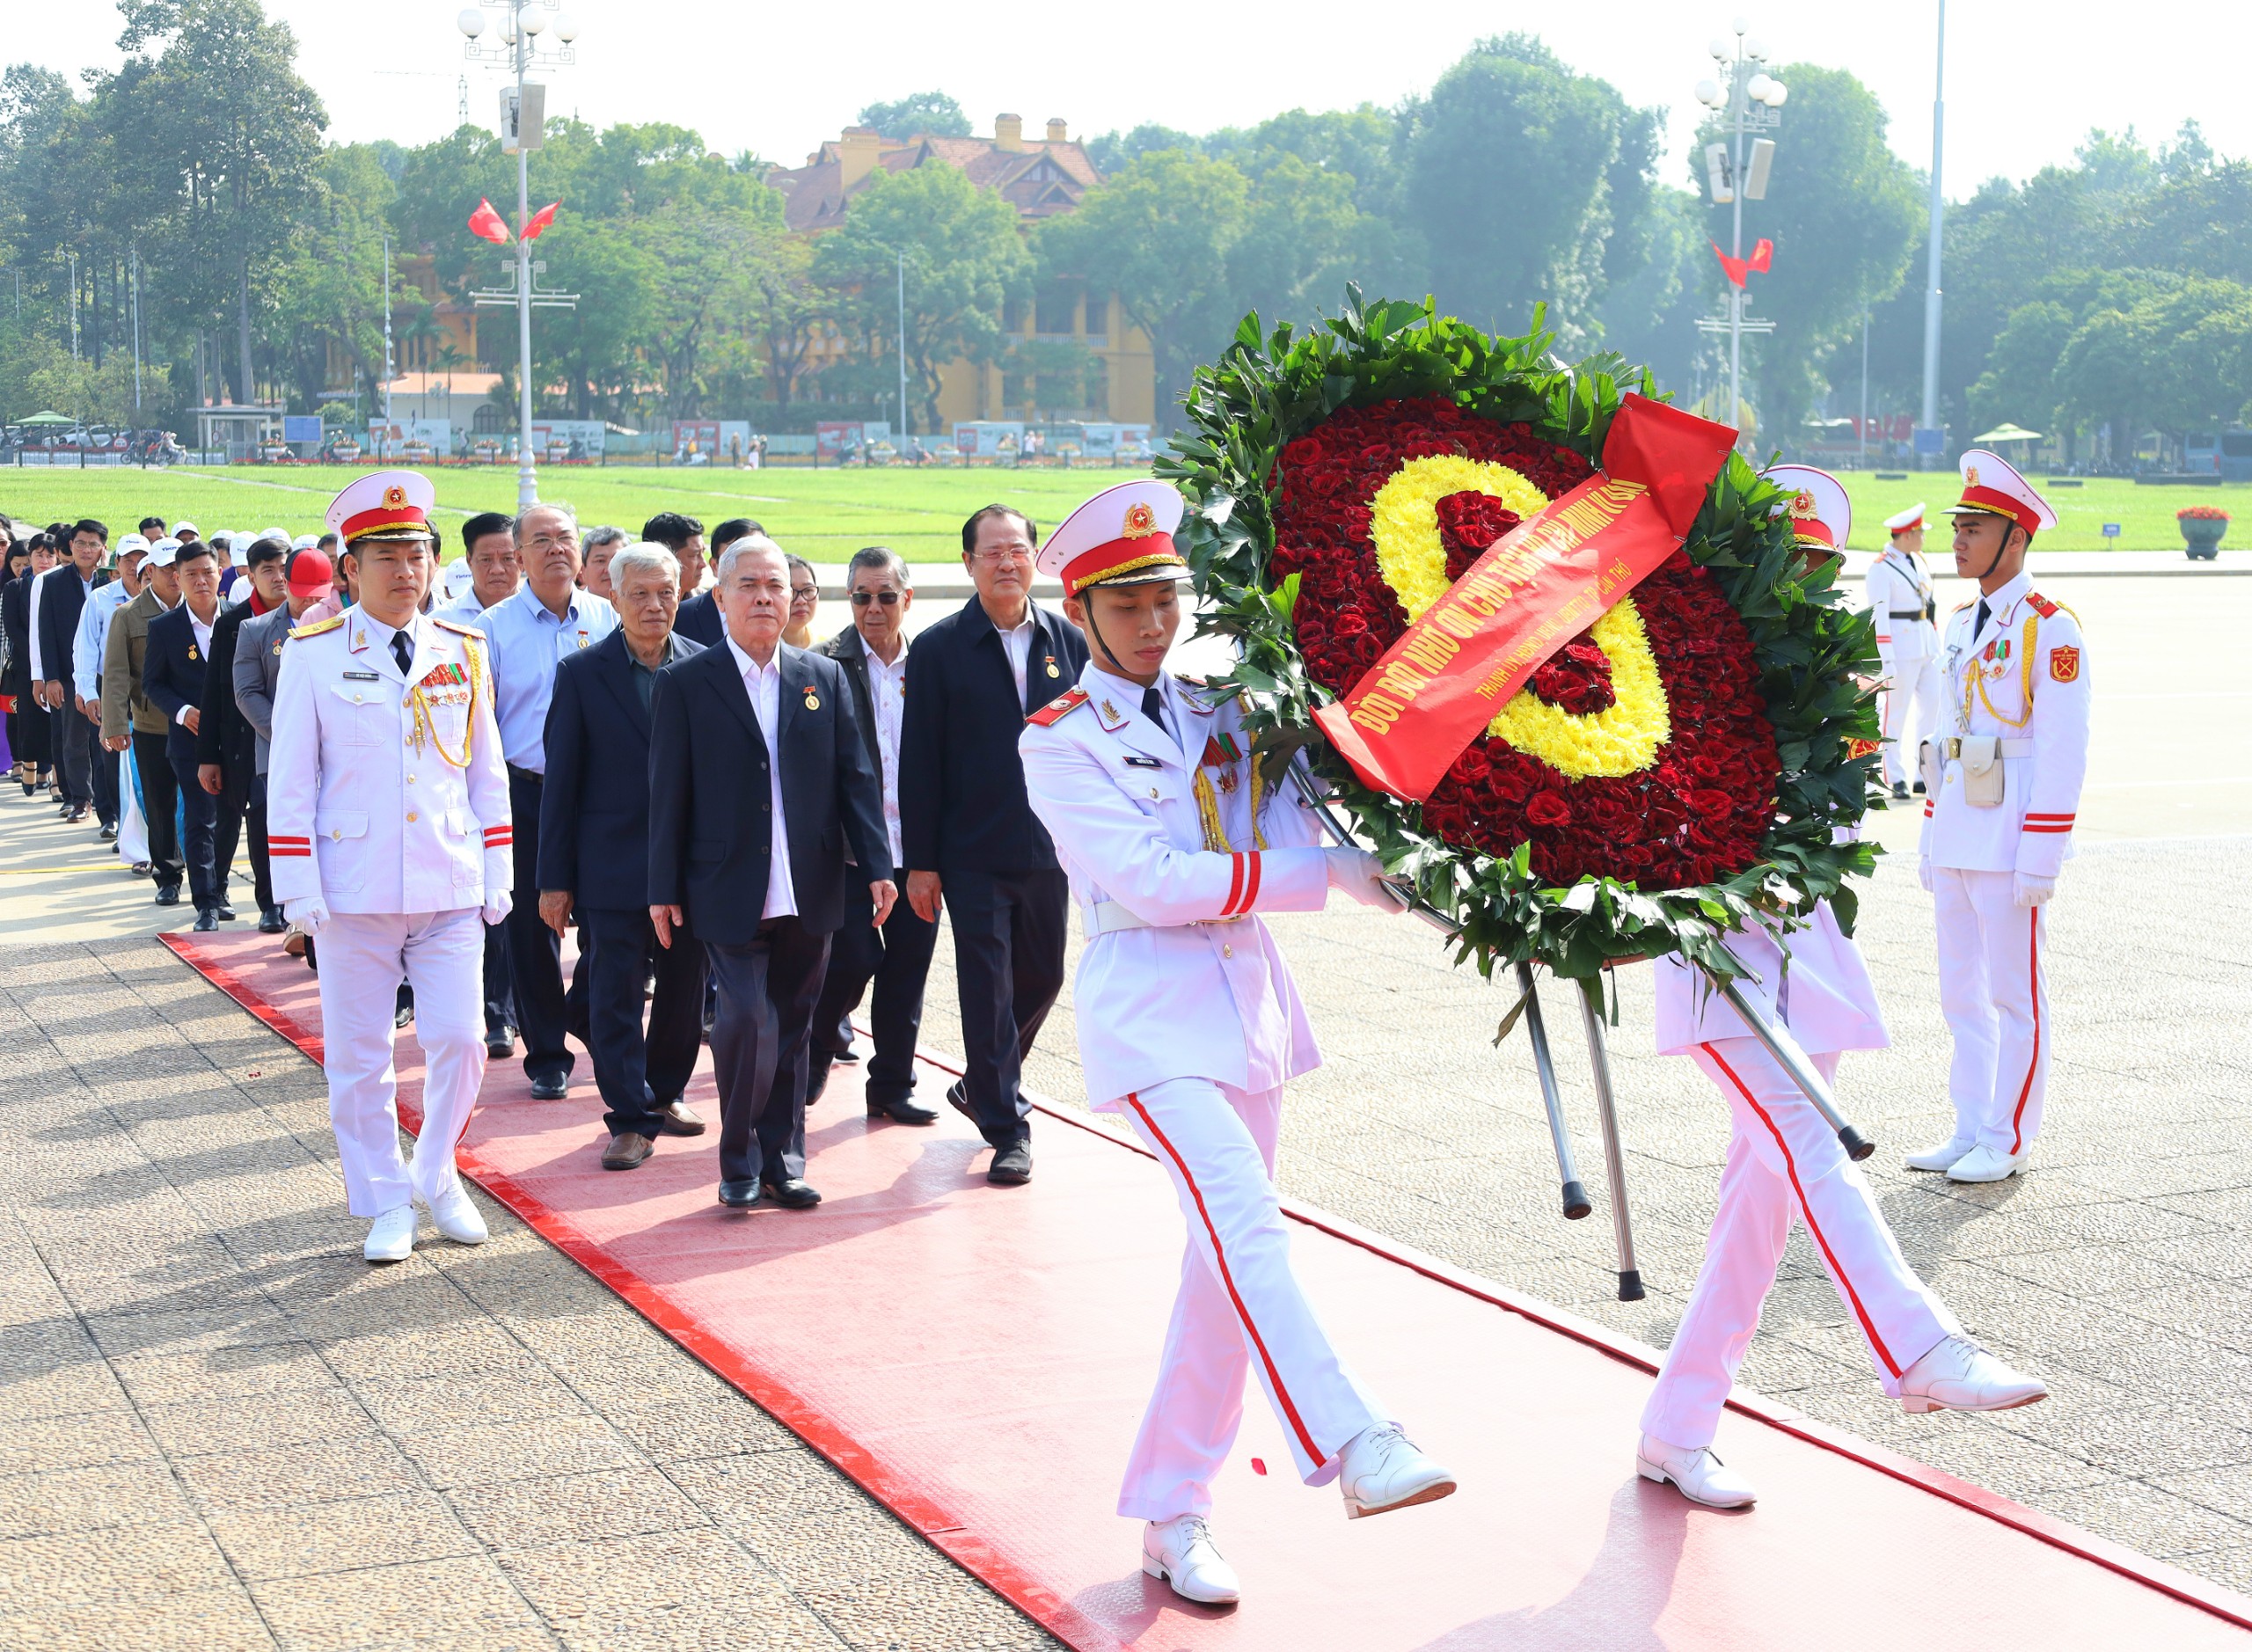 Đoàn đại biểu điển hình tiêu biểu có nhiều đóng góp trong quá trình xây dựng và phát triển TP. Cần Thơ vào Lăng viếng Chủ tịch Hồ Chí Minh.